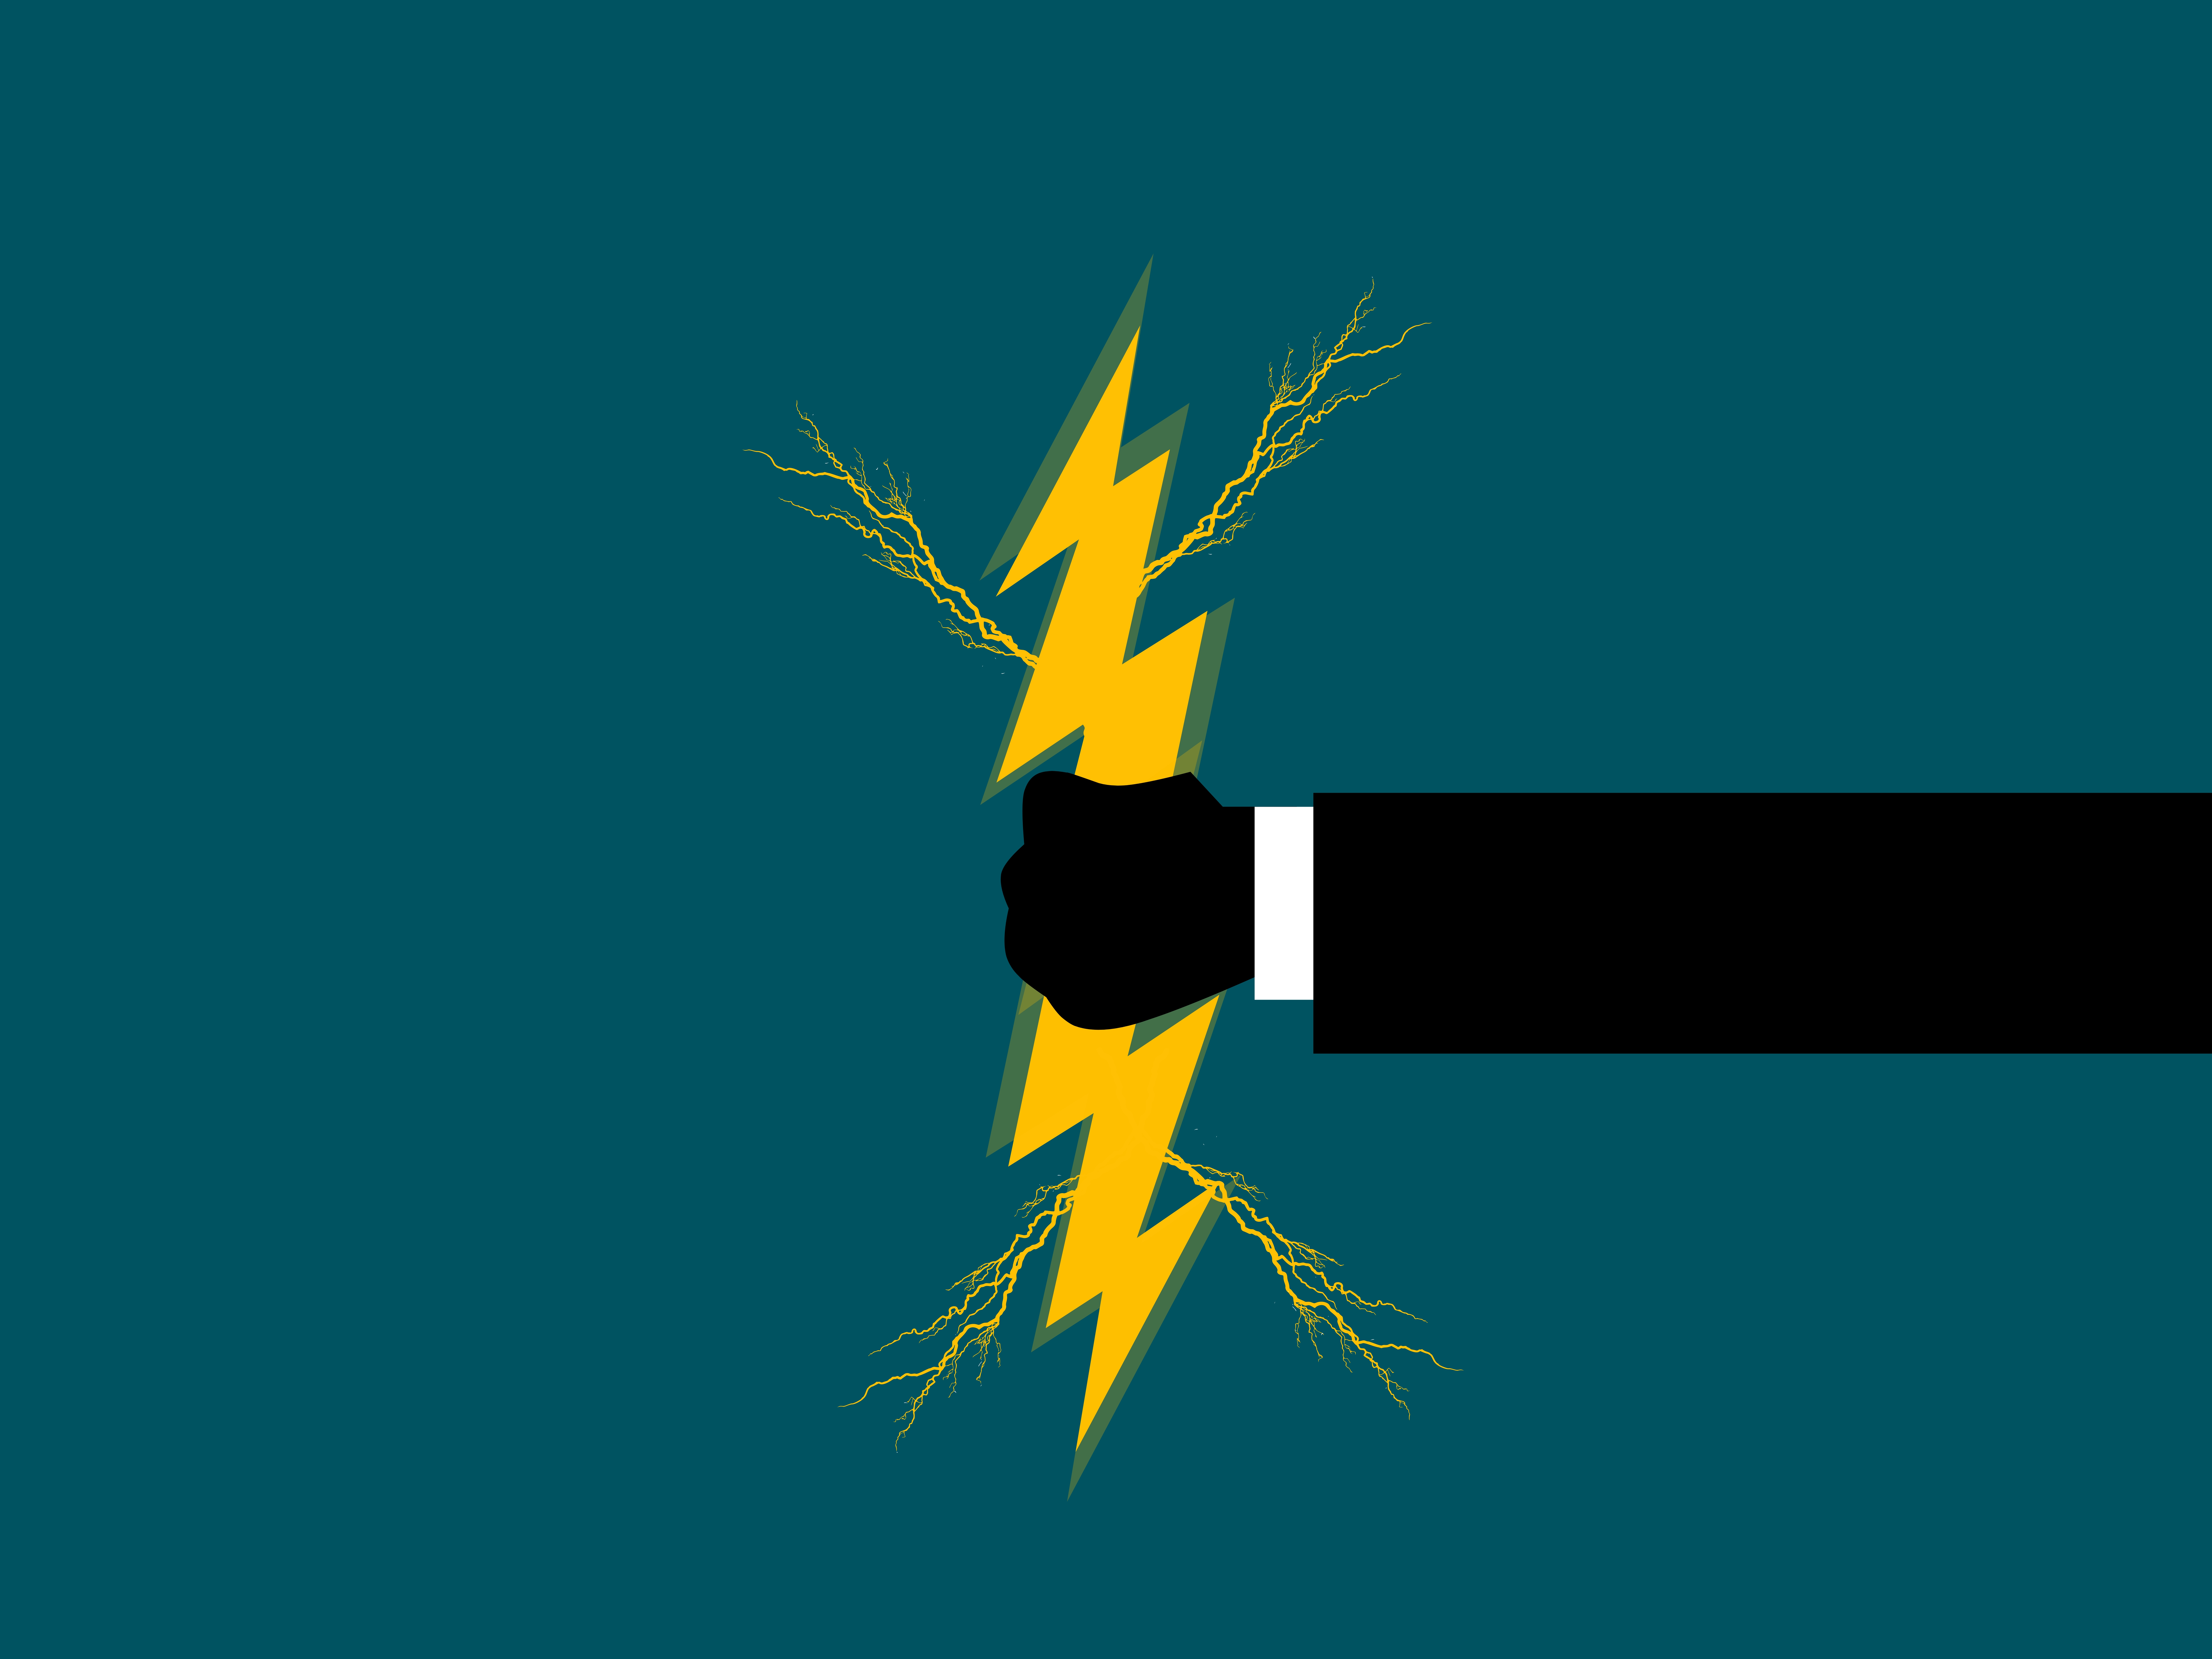 Thunder bolt graphic design